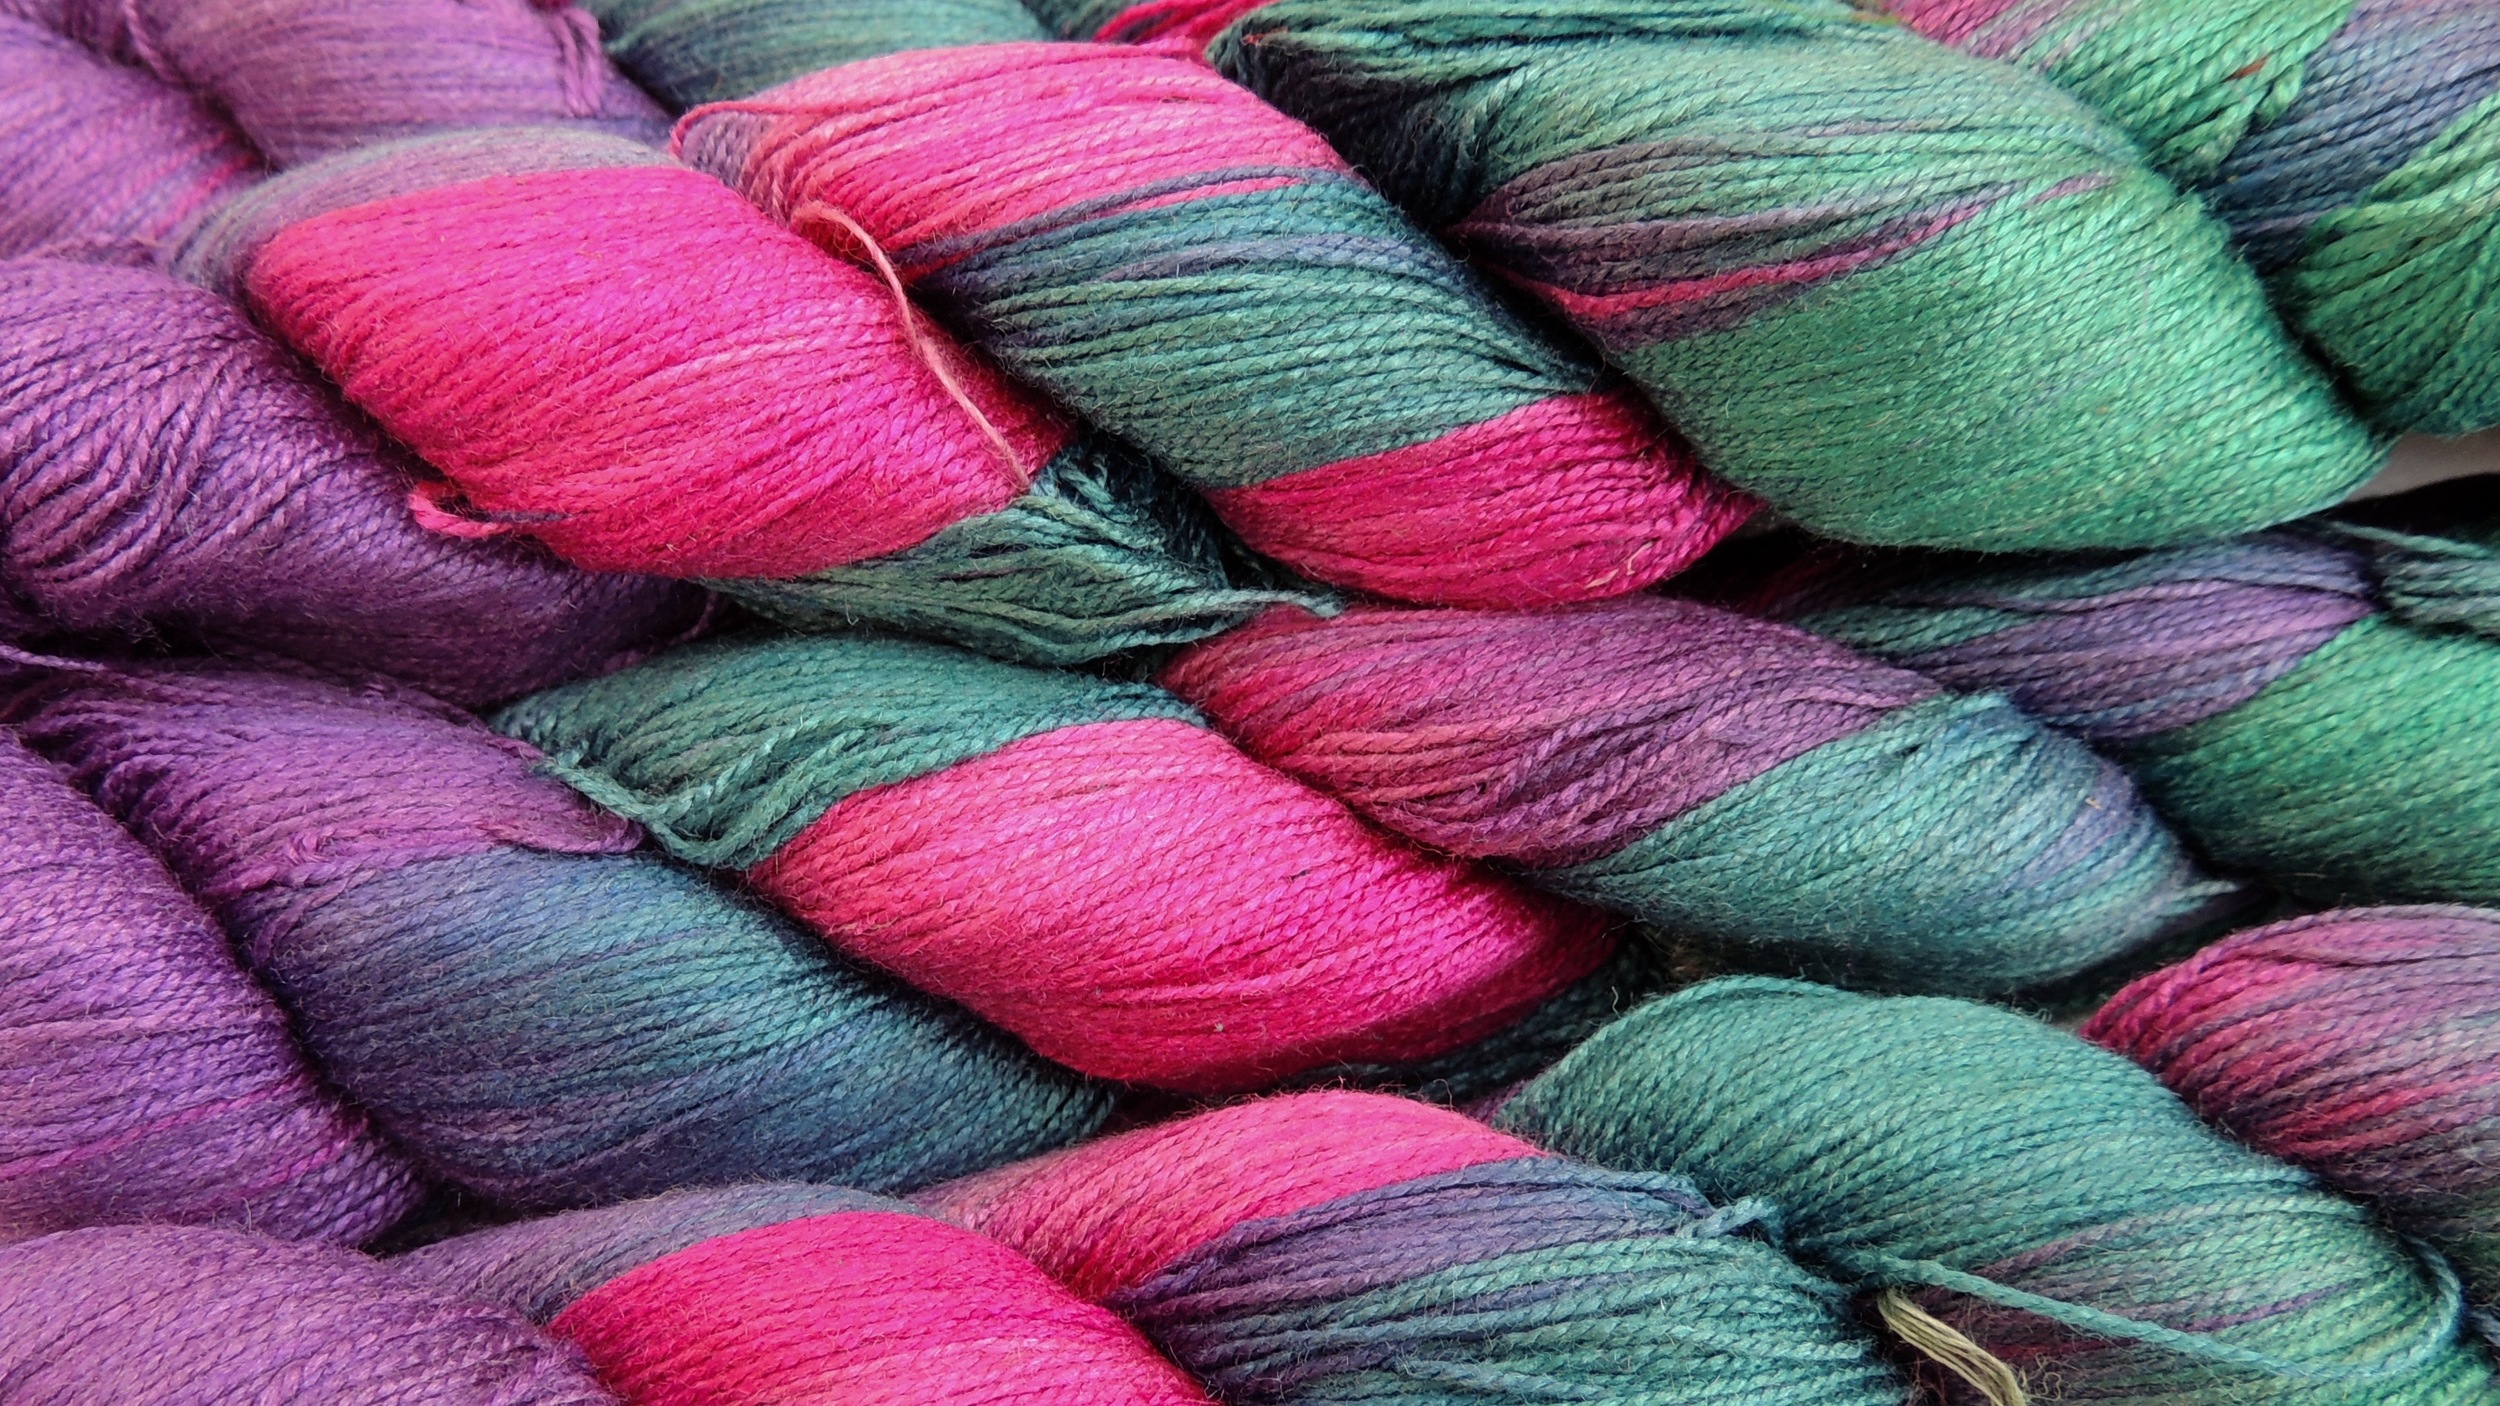 Knitsilk 3 Ply 100% Mulberry Silk Lace Weight Yarn, Nepal